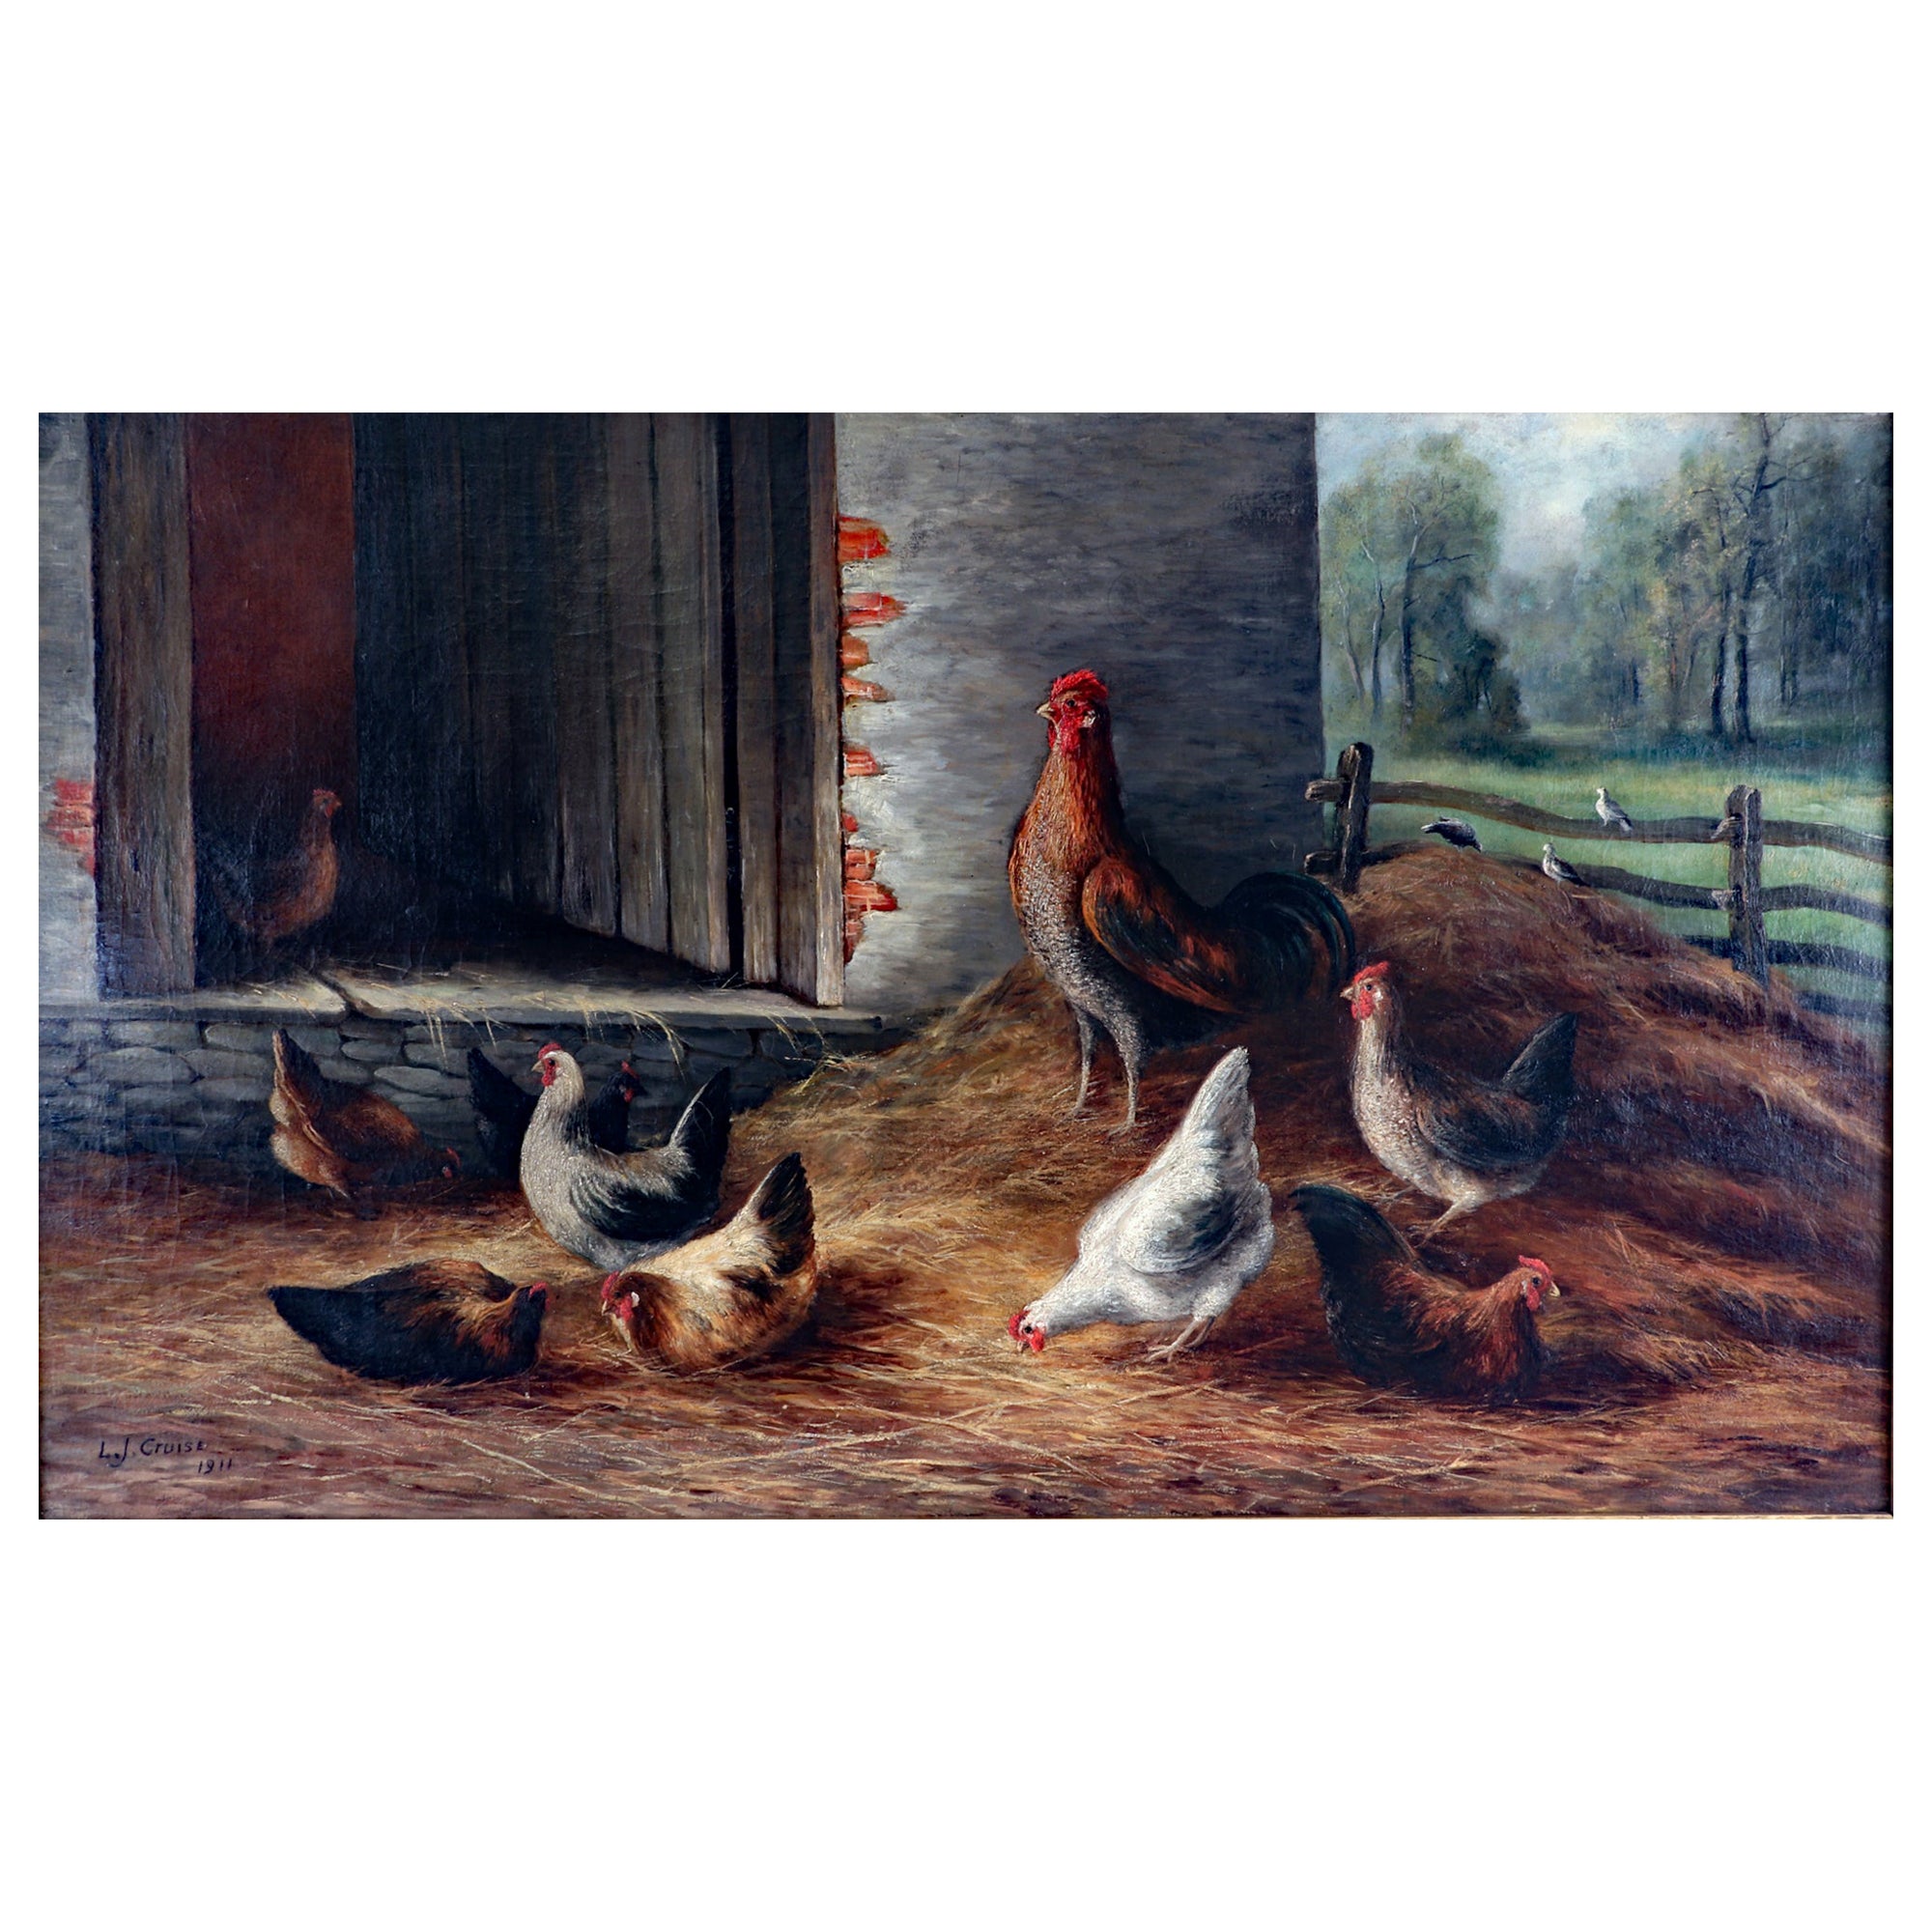 Gemälde einer Bauernhofsszene mit Hühnern, Öl auf Leinwand, signiert L.J. Kreuzfahrt